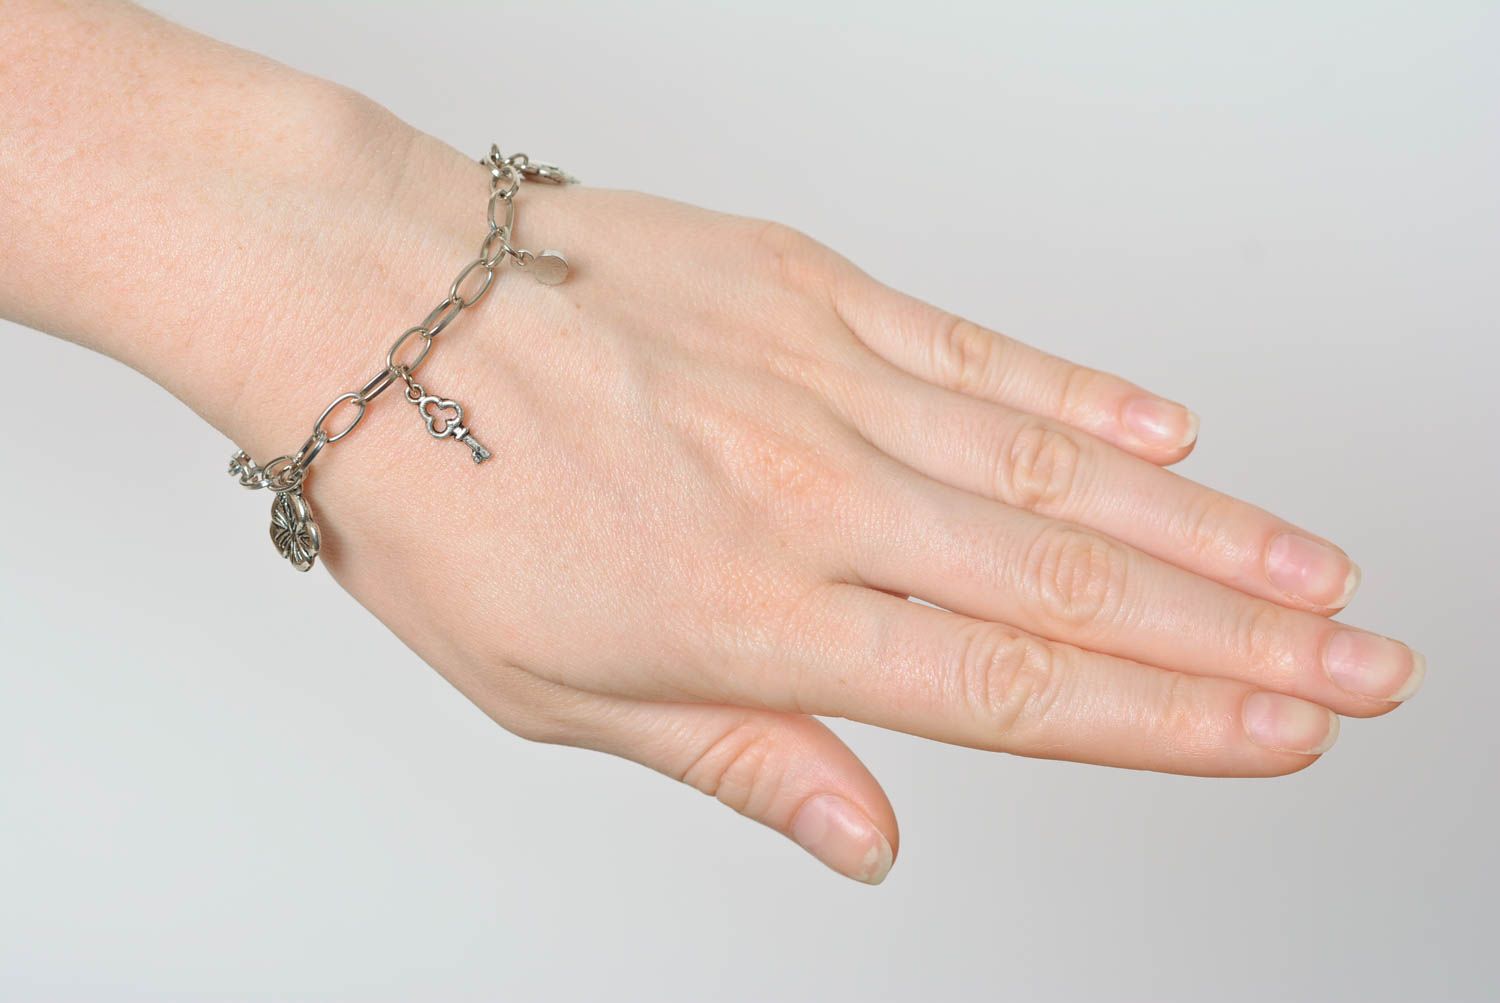 Beautiful bracelet with charms unusual handmade jewelry wrist bracelet photo 4